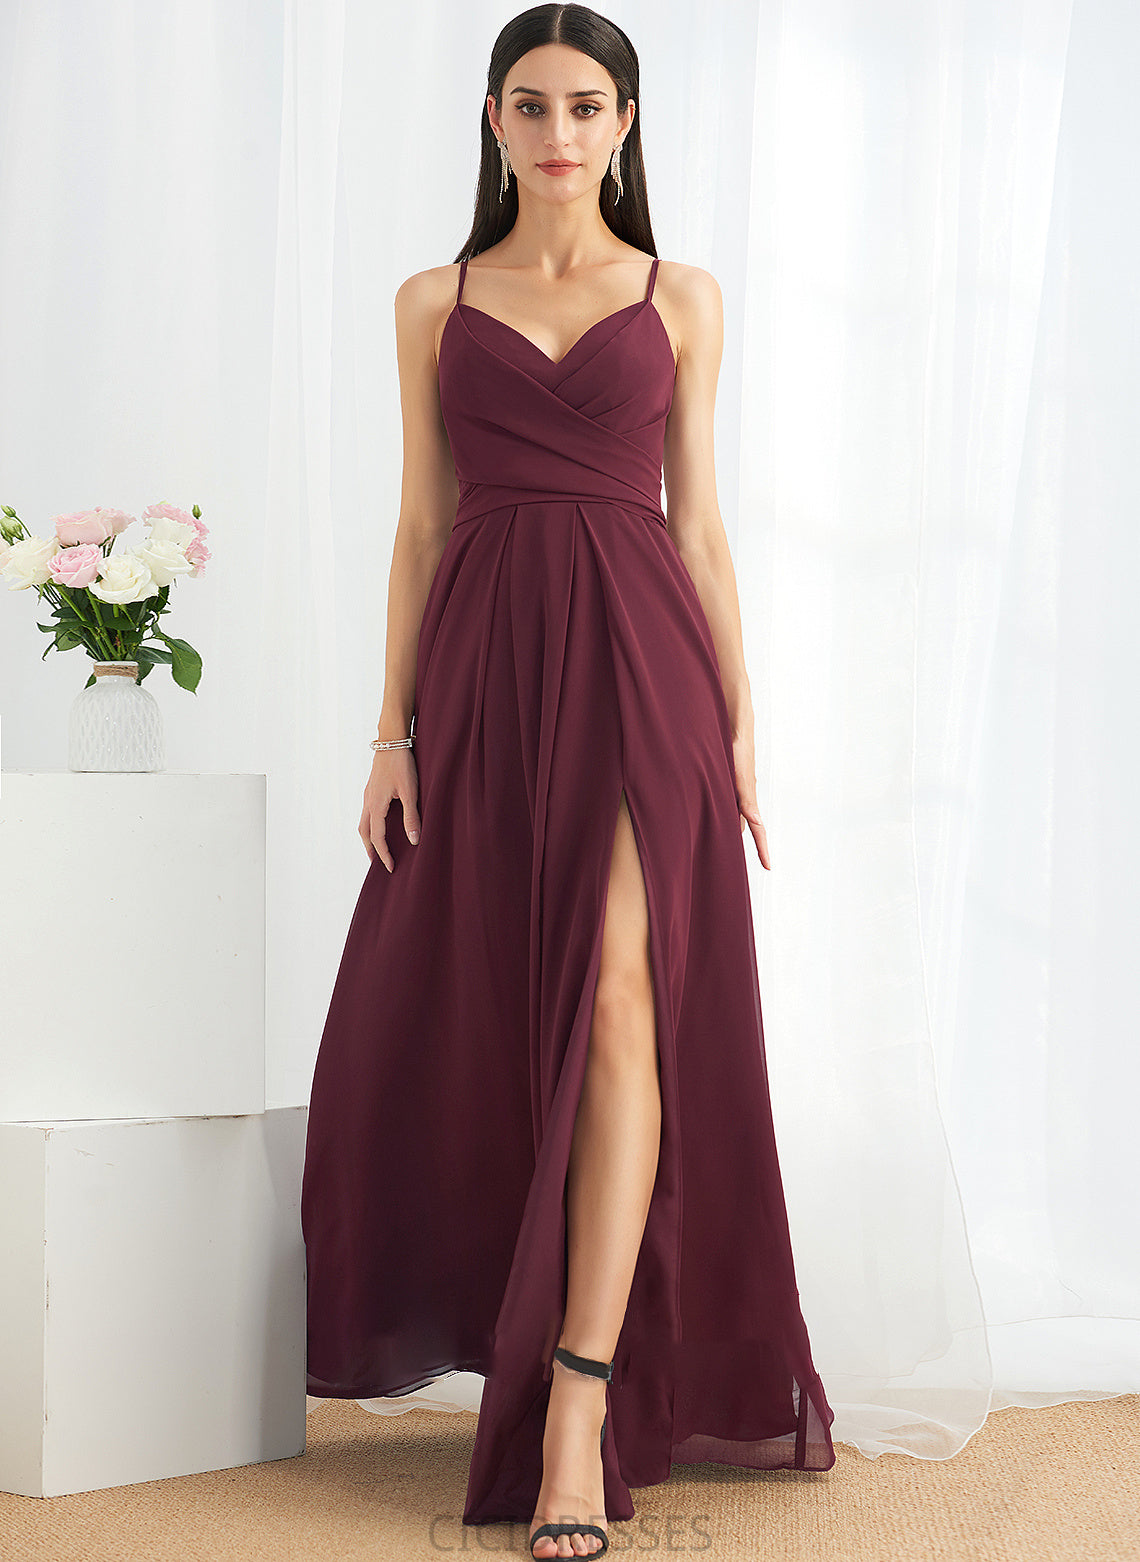 Embellishment A-Line Fabric Length V-neck Floor-Length Ruffle Silhouette SplitFront Neckline Alissa V-Neck Bridesmaid Dresses